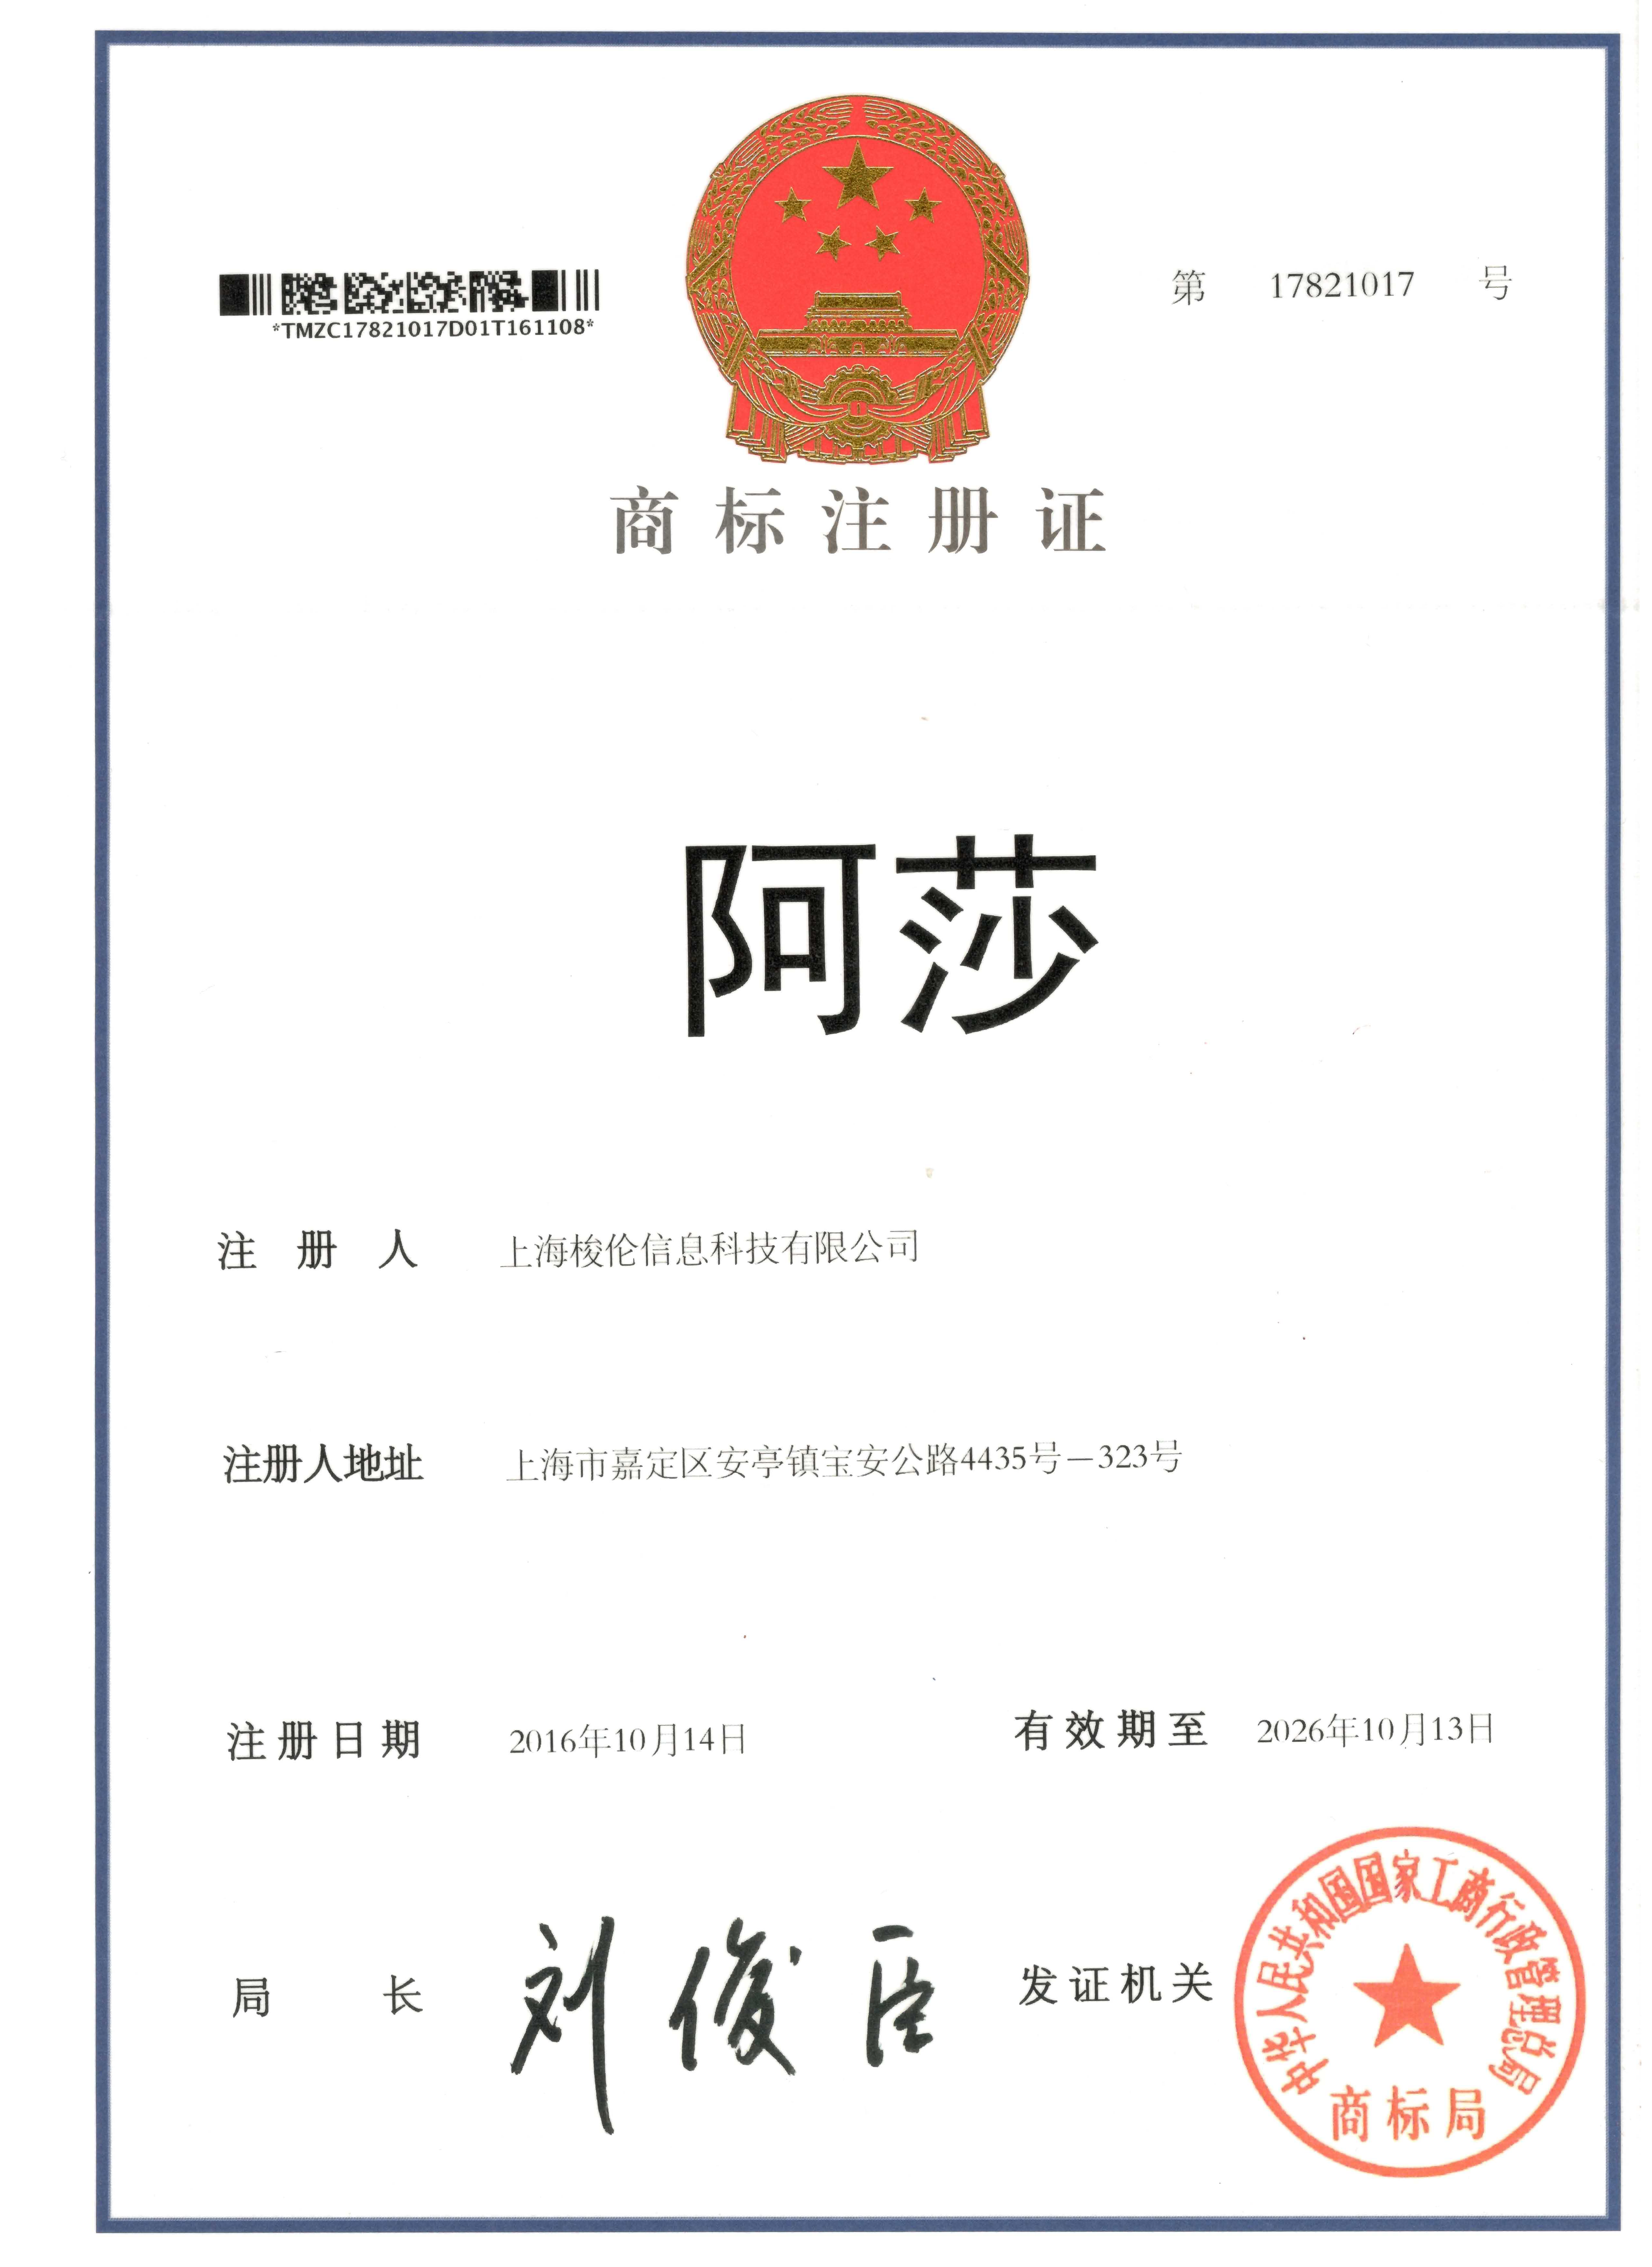 上海梭伦注册商标